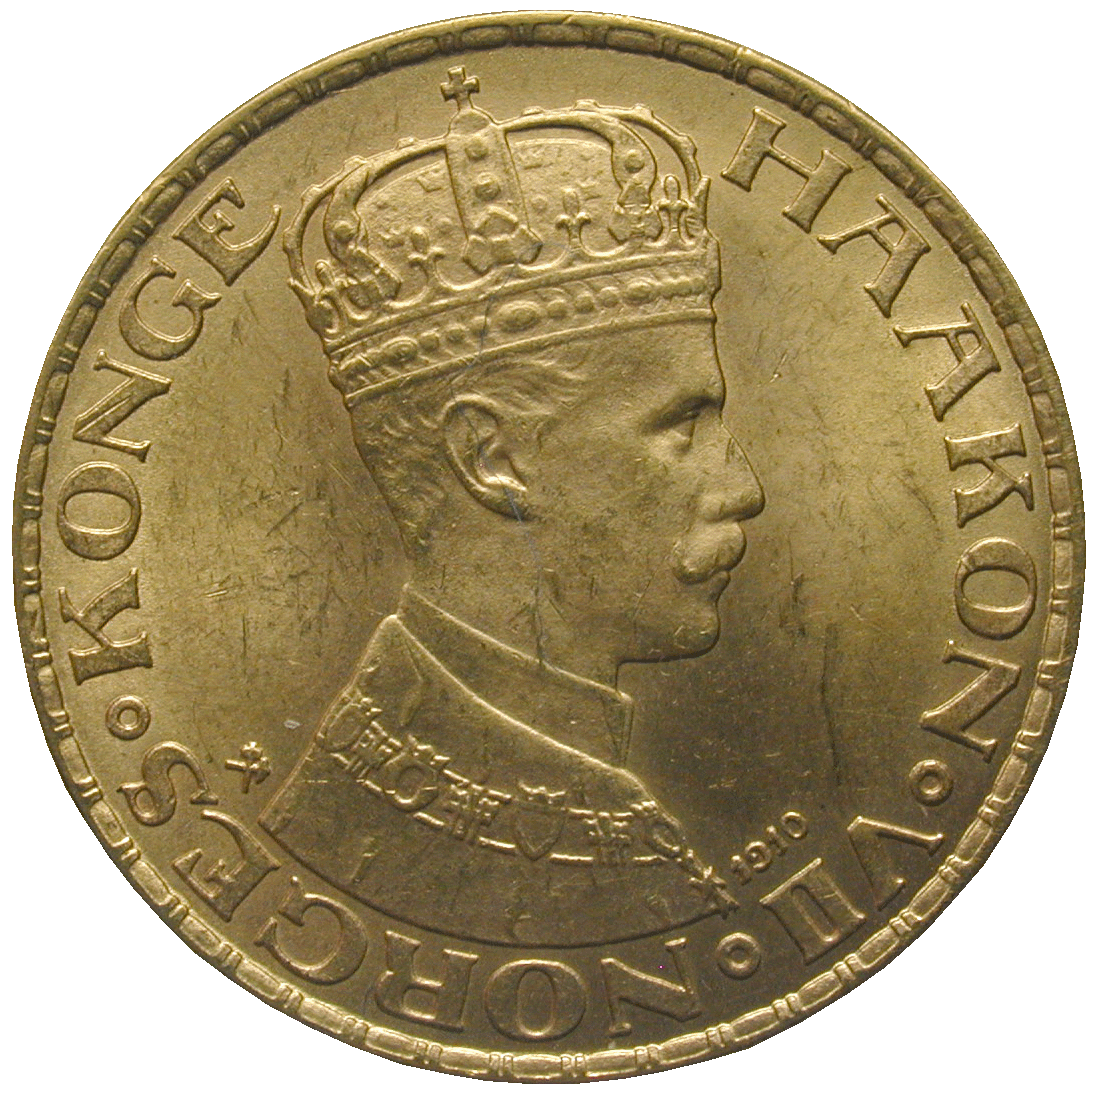 Königreich Norwegen, Haakoon VII., 20 Kronor 1910 (obverse)